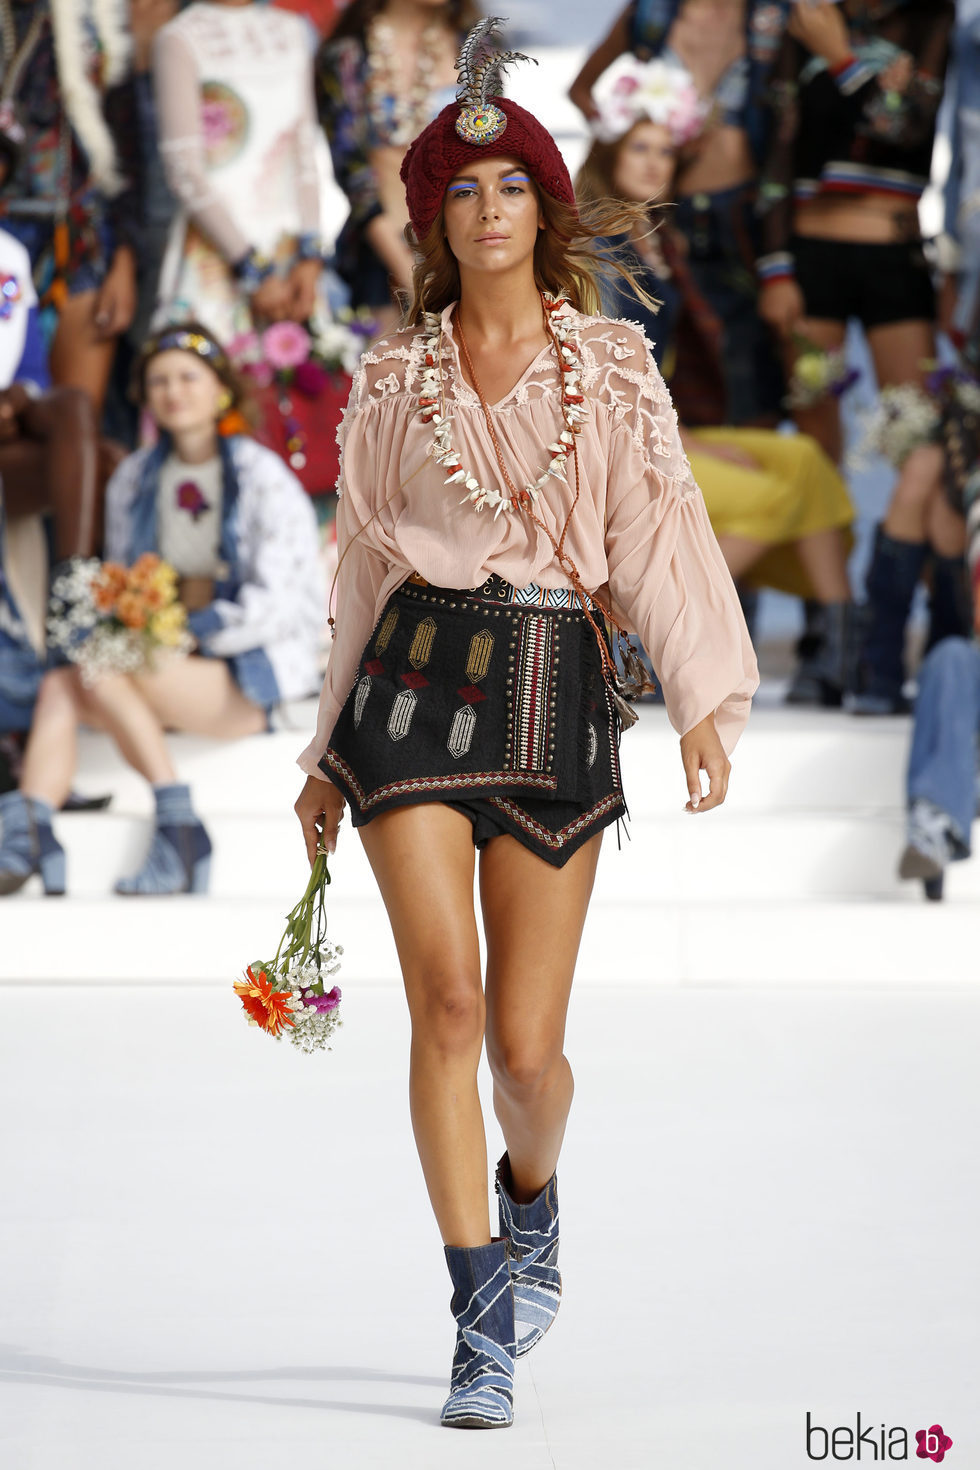 Blusa vintage y falda geométrica de Desigual de la Fashion Week de Ibiza 2017